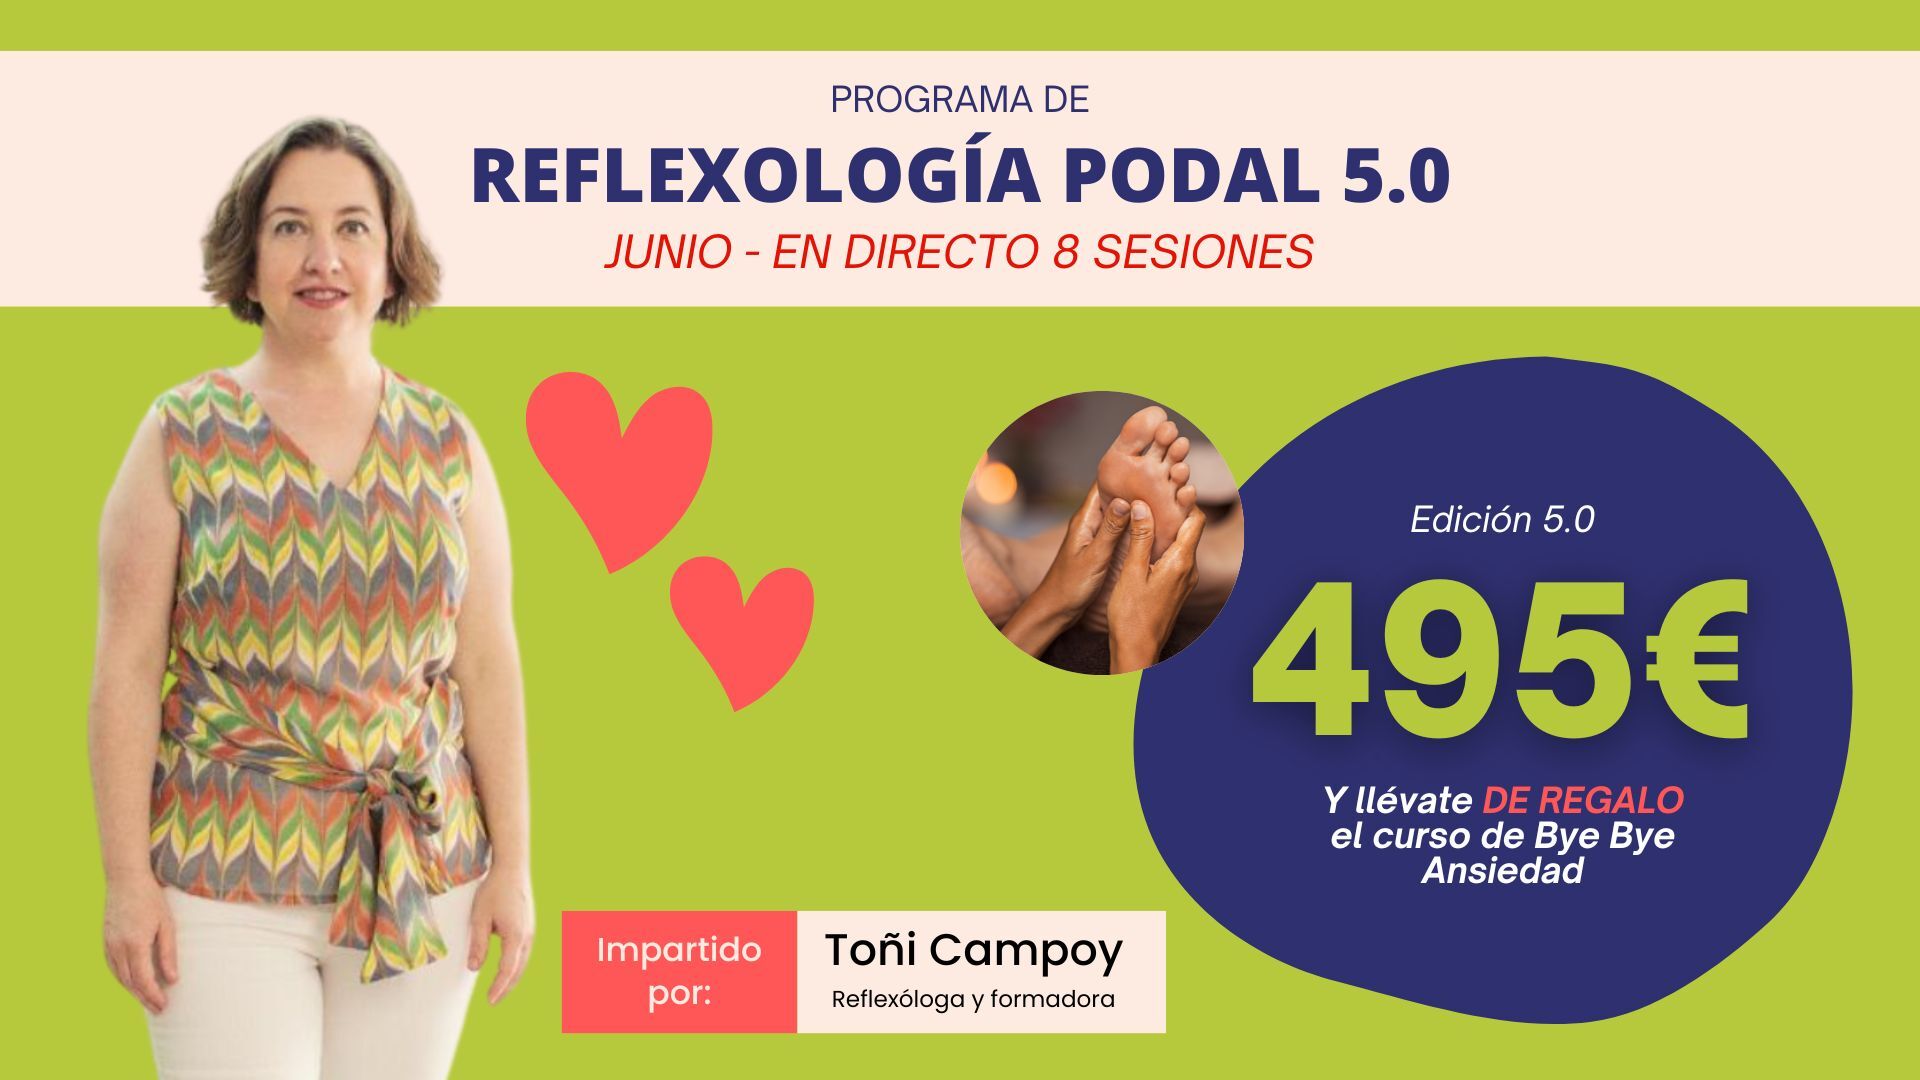 Programa Reflexología Podal 5.0 en Directo